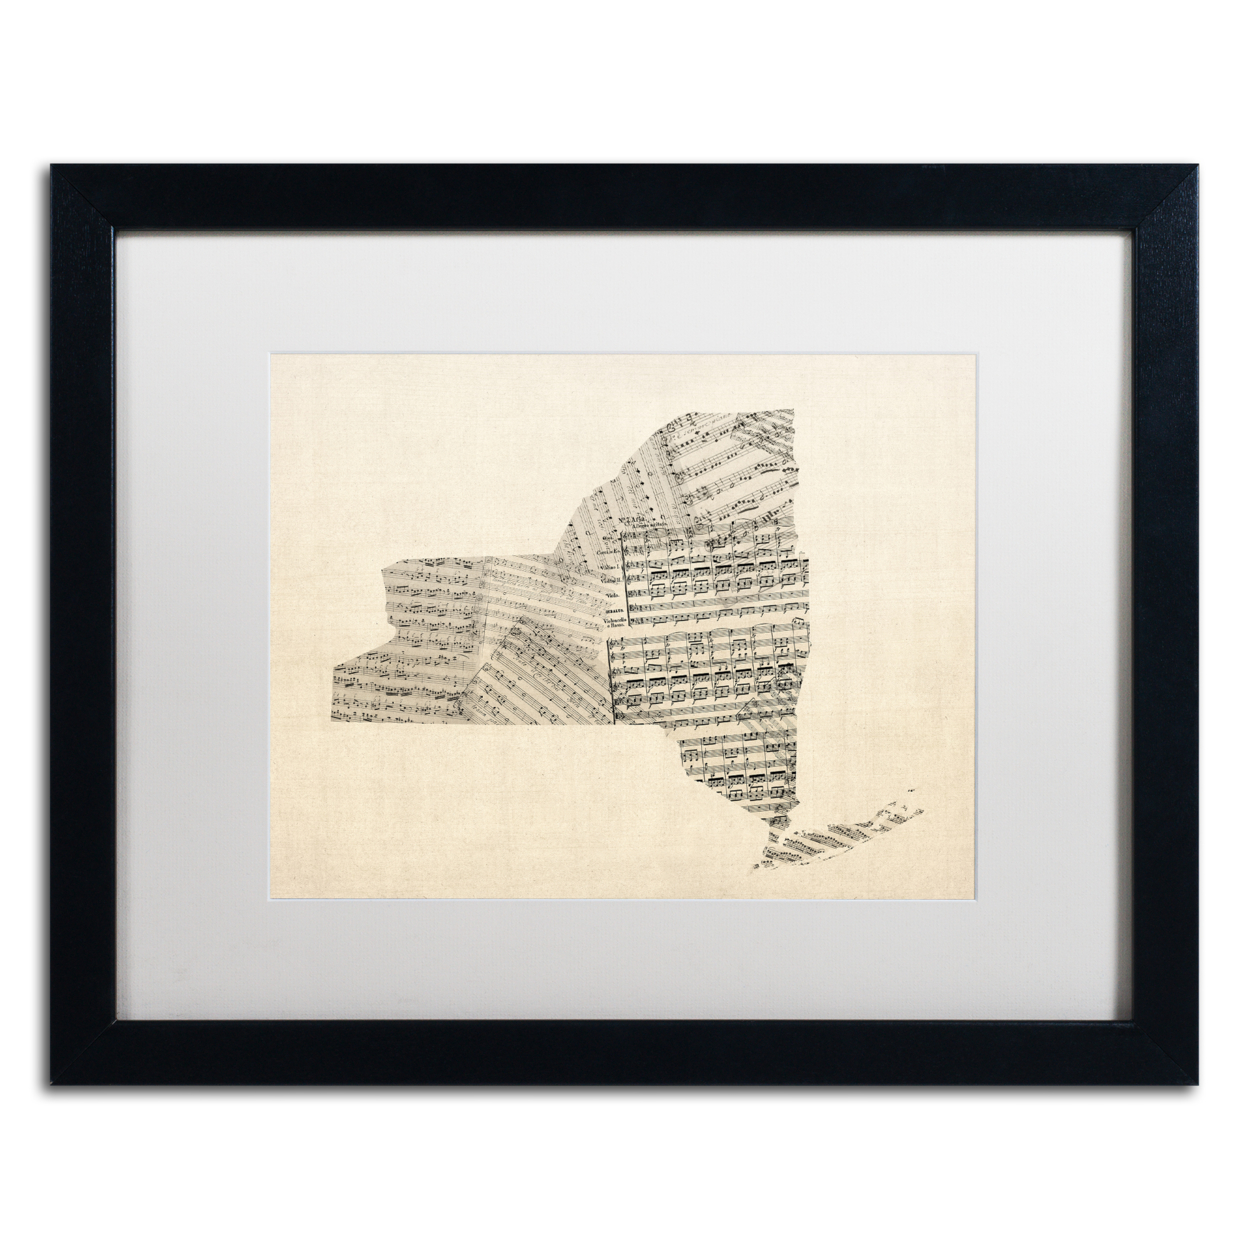 Michael Tompsett 'Old Sheet Music Map Of New York' Black Wooden Framed Art 18 X 22 Inches